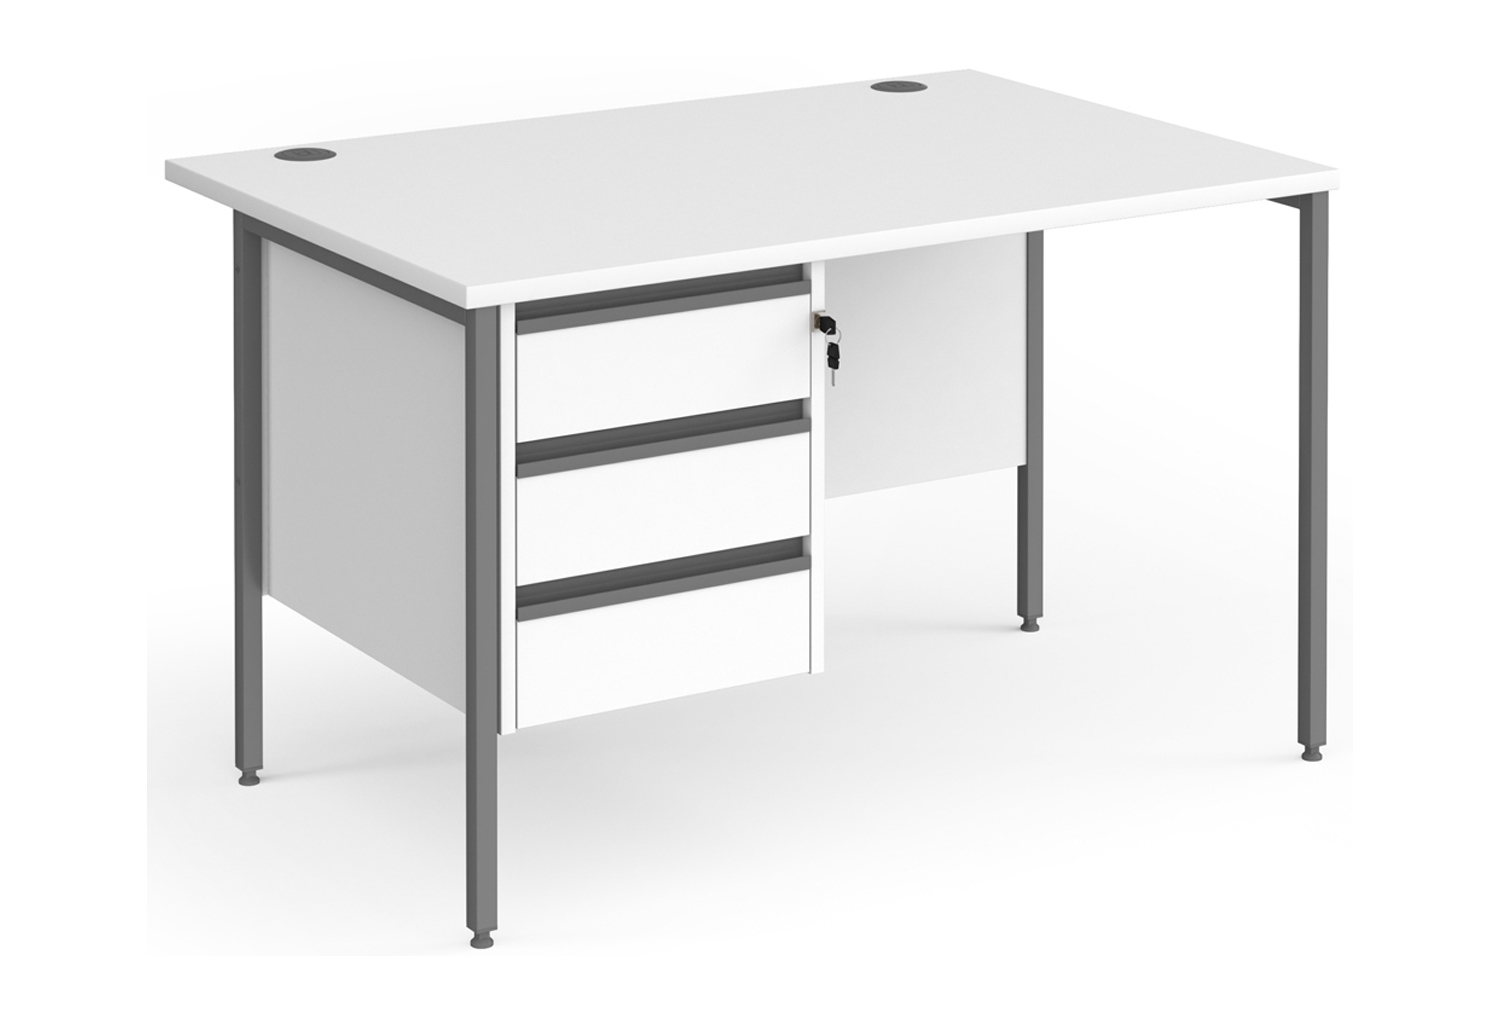 Value Line Classic+ Rectangular H-Leg Office Desk 3 Drawers (Graphite Leg), 120wx80dx73h (cm), White